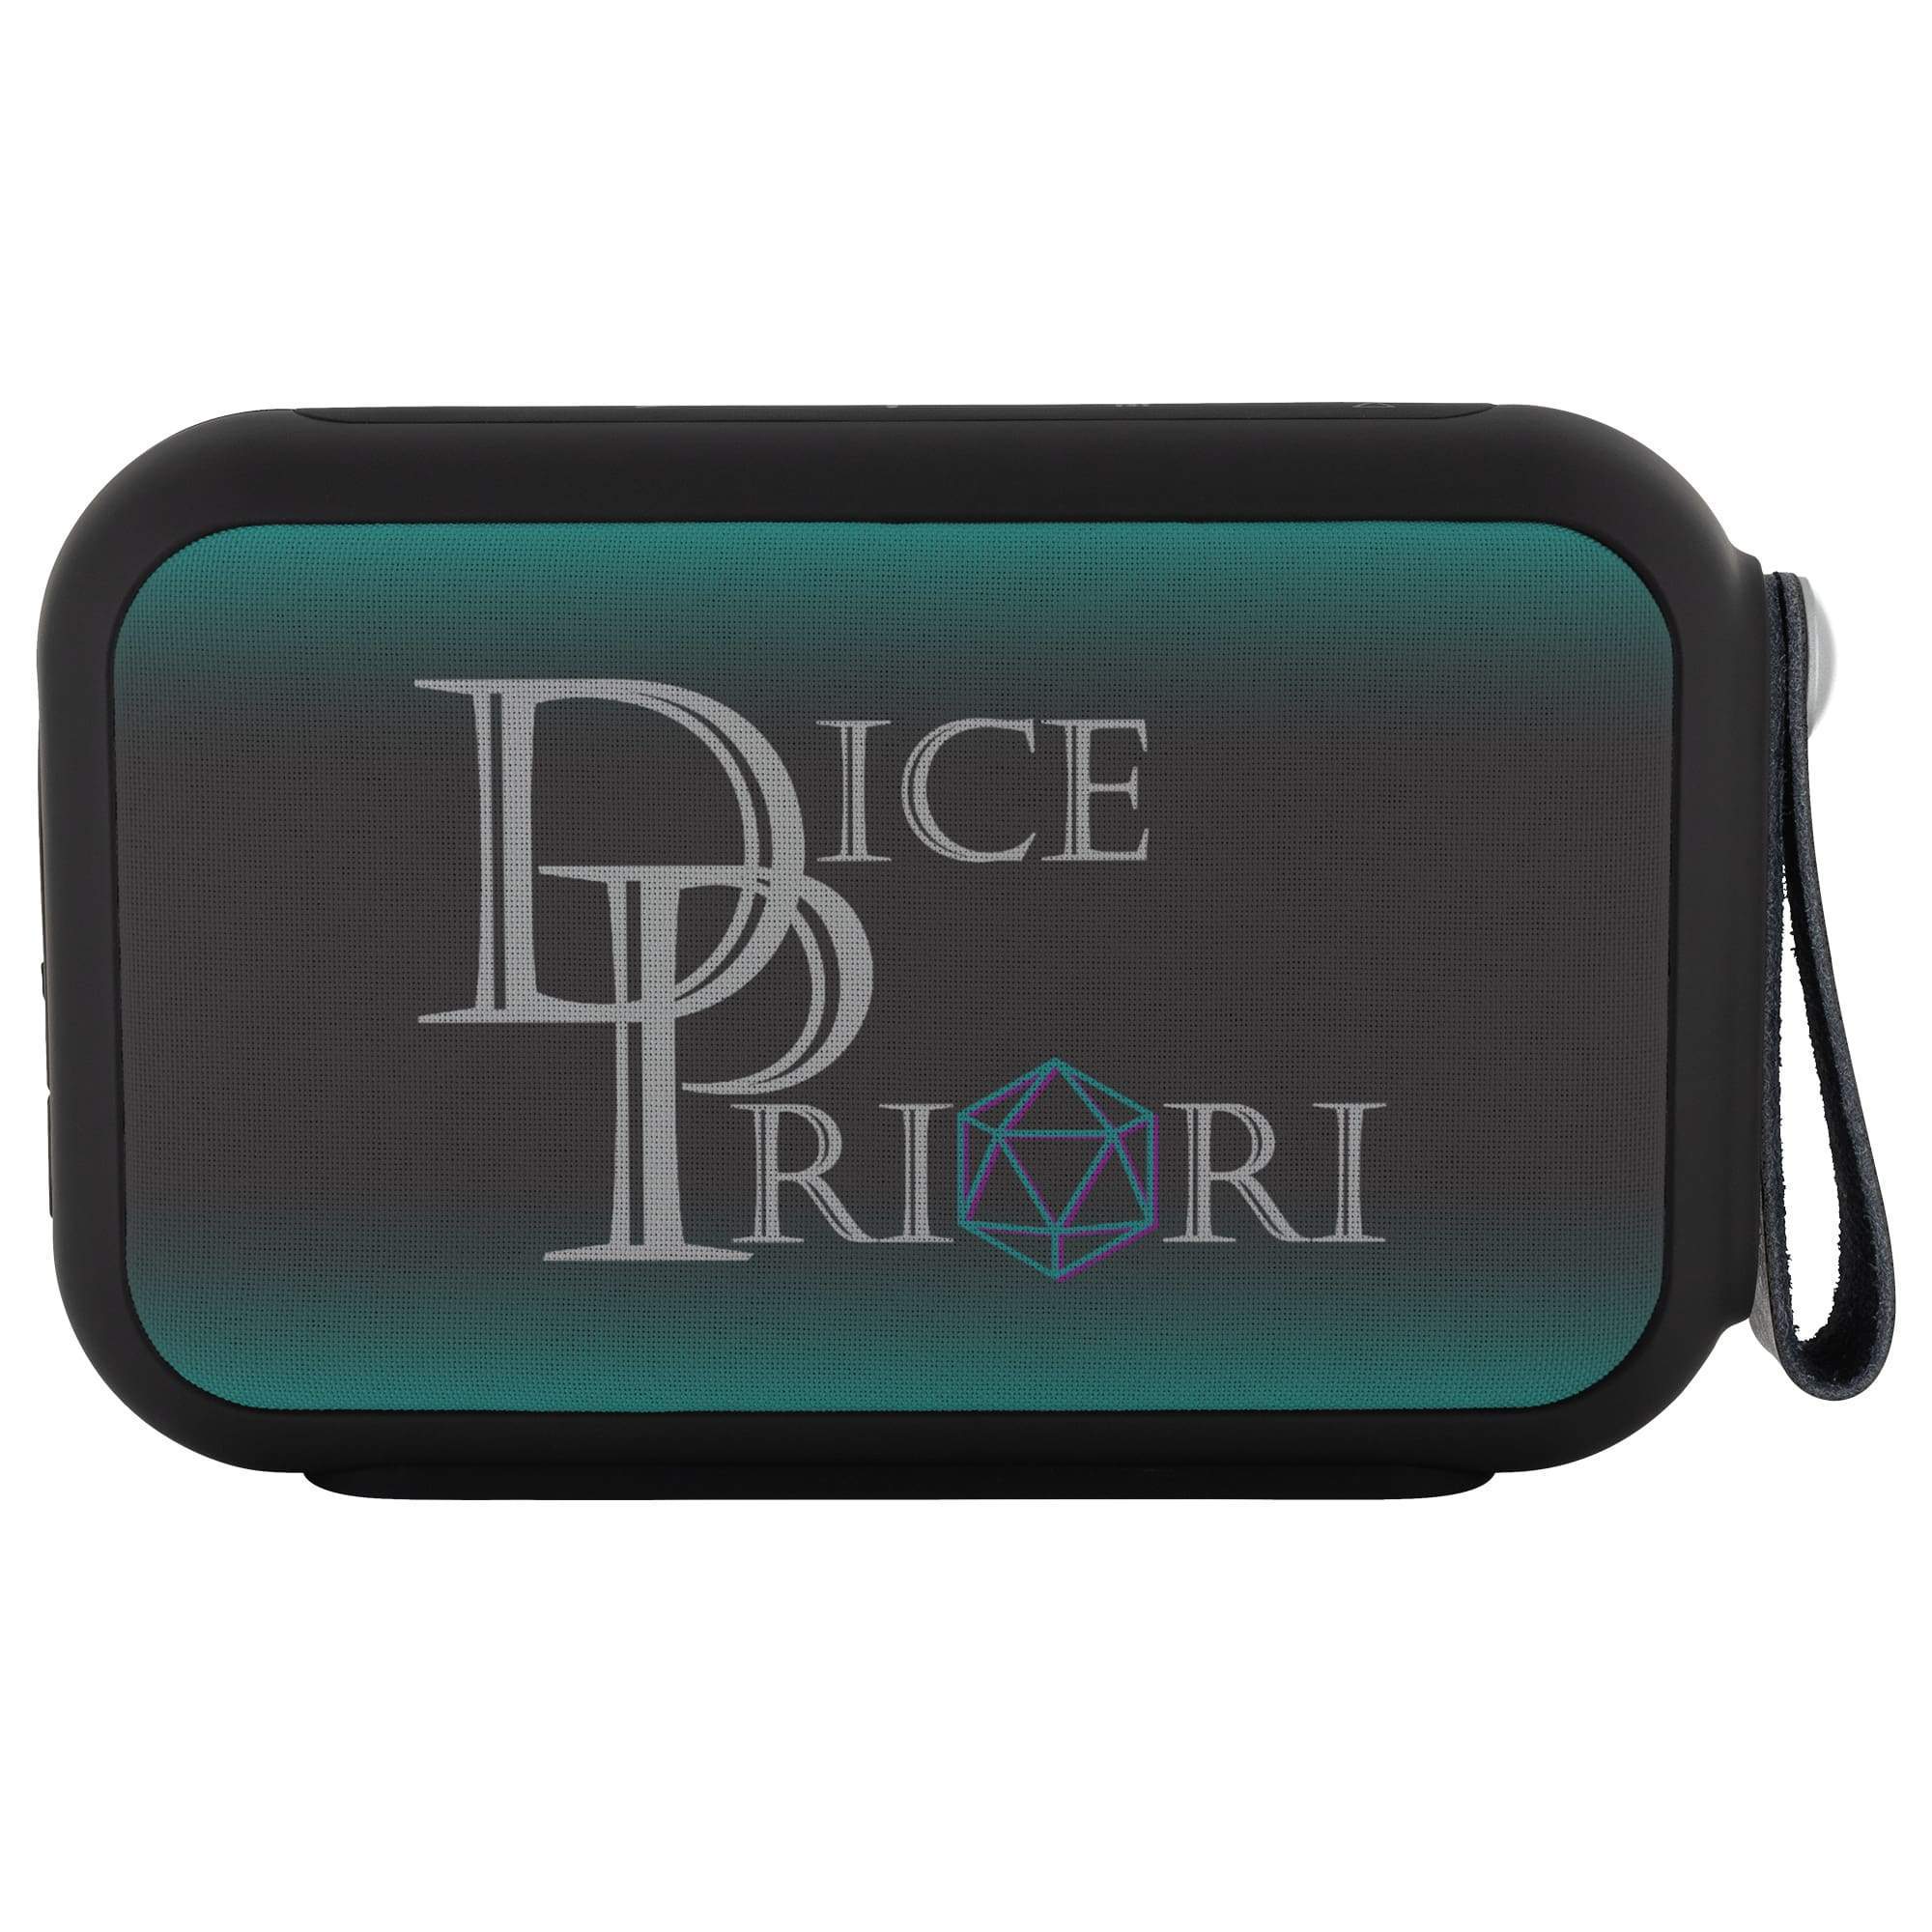 Dice Priori Classic Text Logo Bluetooth Speaker - Bluetooth Speaker - Headphones